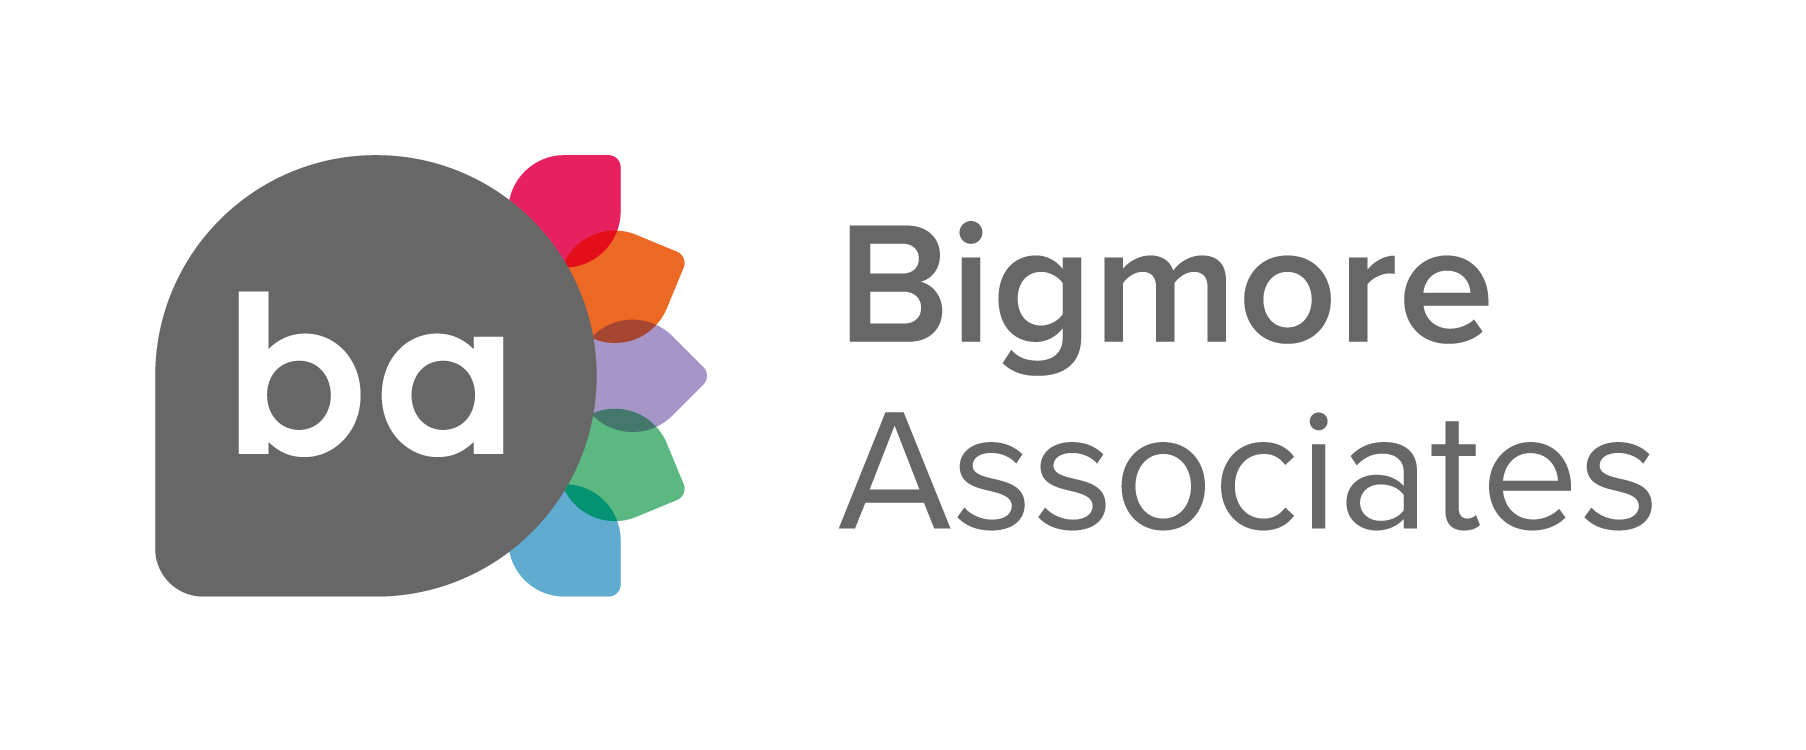 Bigmore Associates